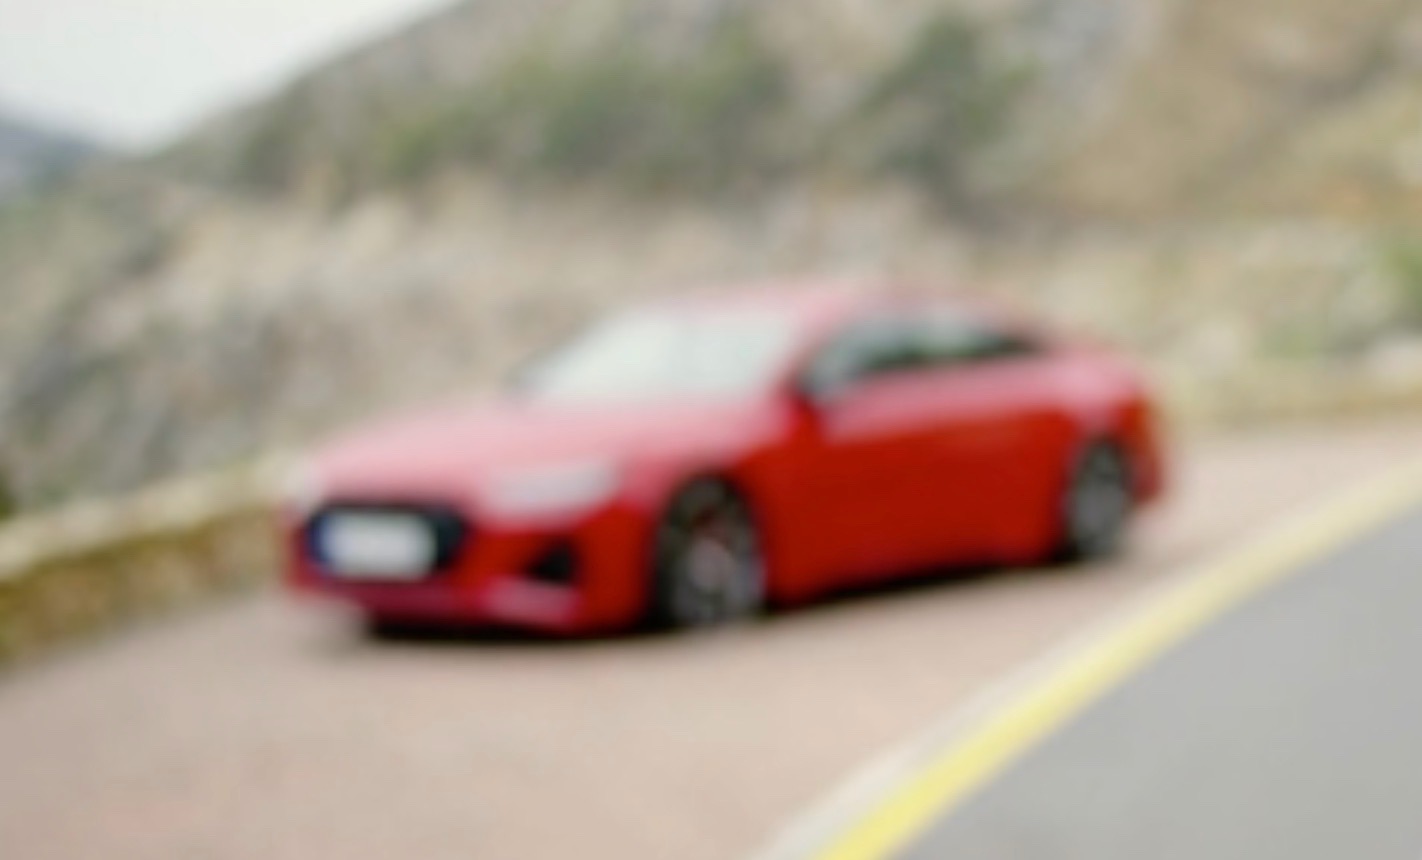 2020 Audi RS 7 Sportback debut confirmed for Frankfurt show